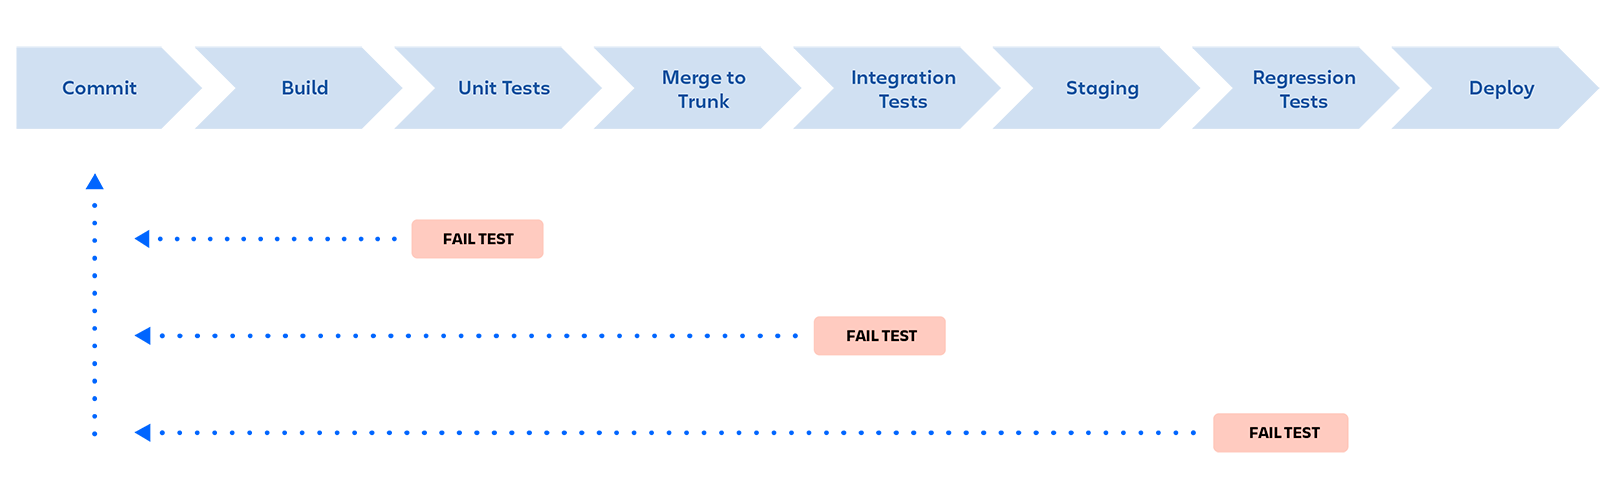 Конвейер DevOps: коммит, сборка, модульные тесты, слияние в магистральную ветку, интеграционные тесты, промежуточная среда, регрессионные тесты, развертывание. Конвейер останавливается, если на каком-либо этапе тест оказывается не пройденным; разработчик получает обратную связь.